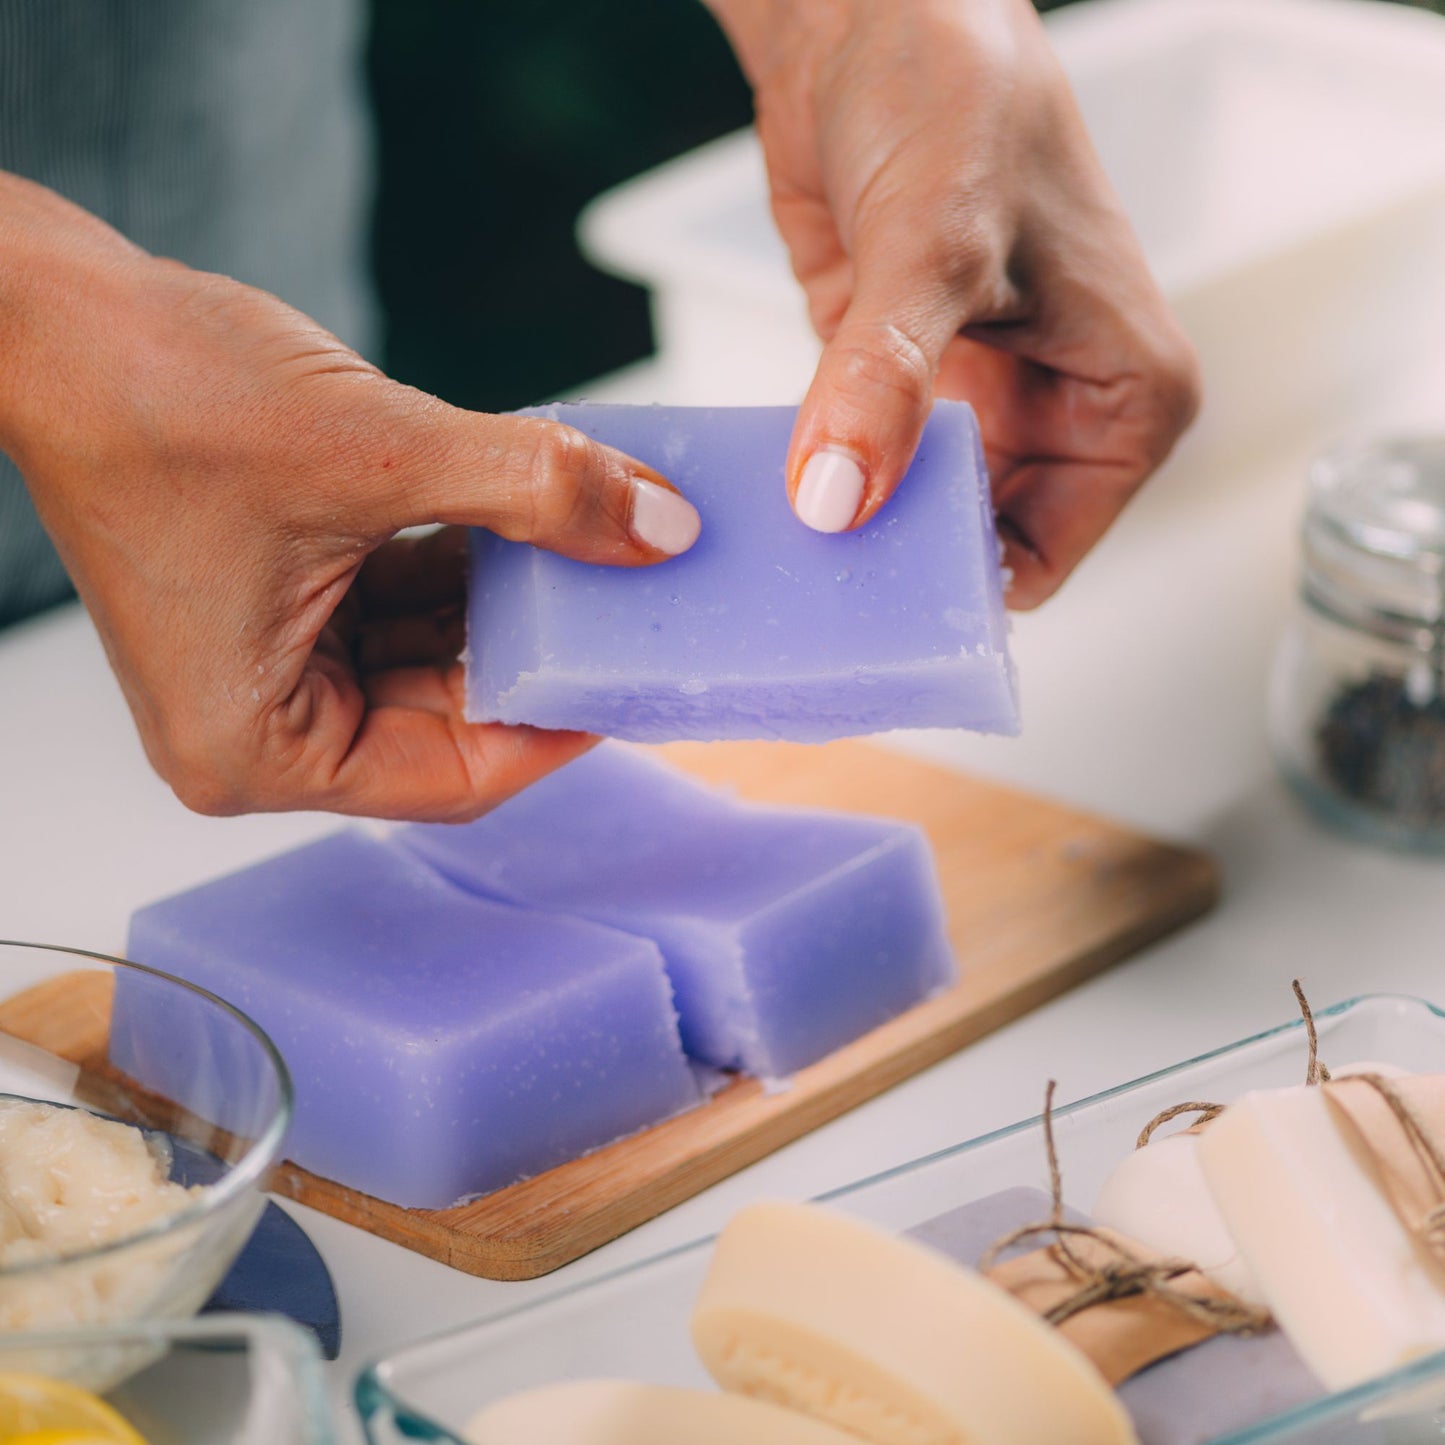 Cutting soap